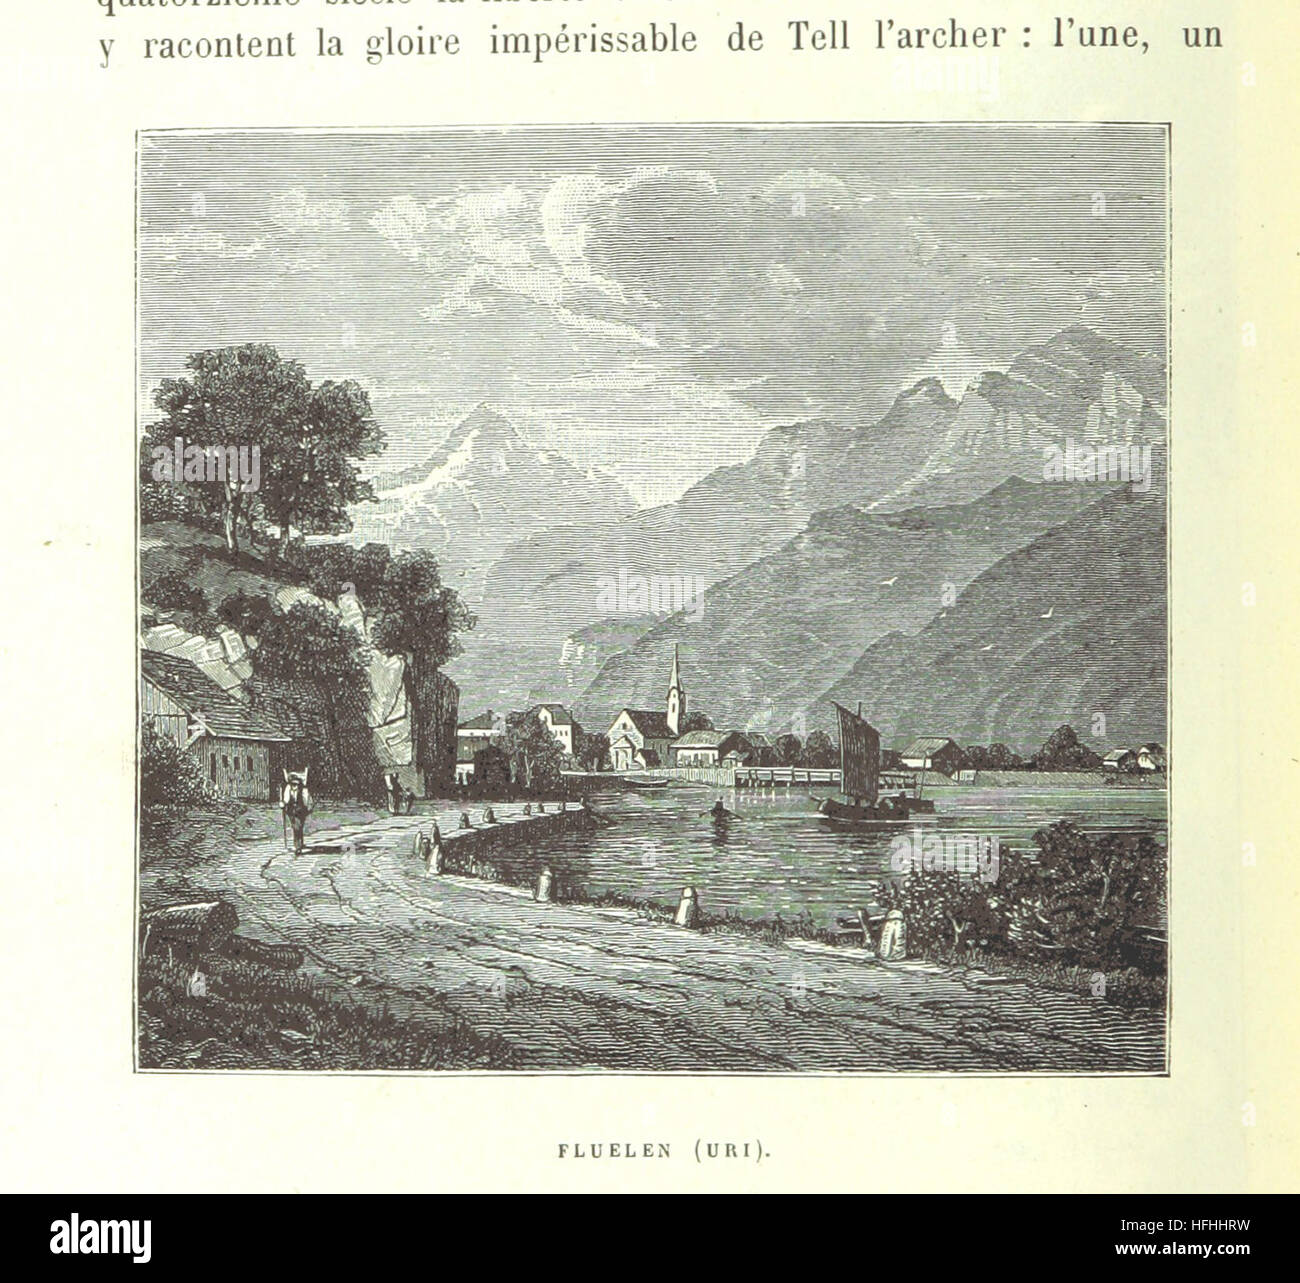 Immagine presa da pagina 166 di "La Suisse pittoresco' immagine presa da pagina 166 di "La Suisse pittoresco' Foto Stock